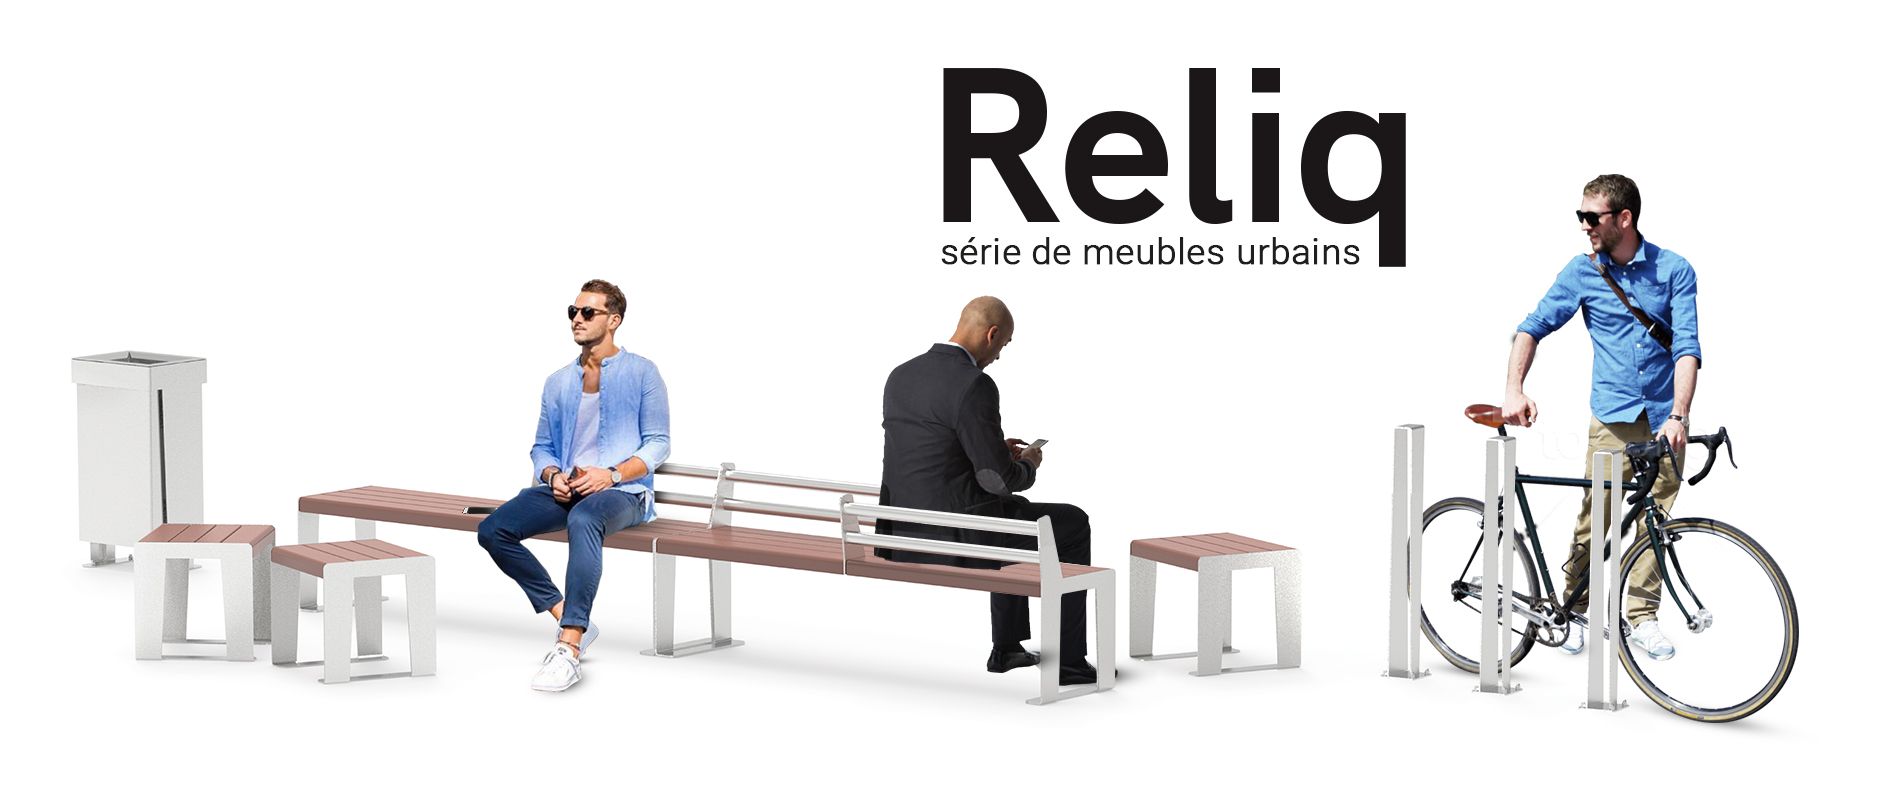 Reliq série de meubles urbains